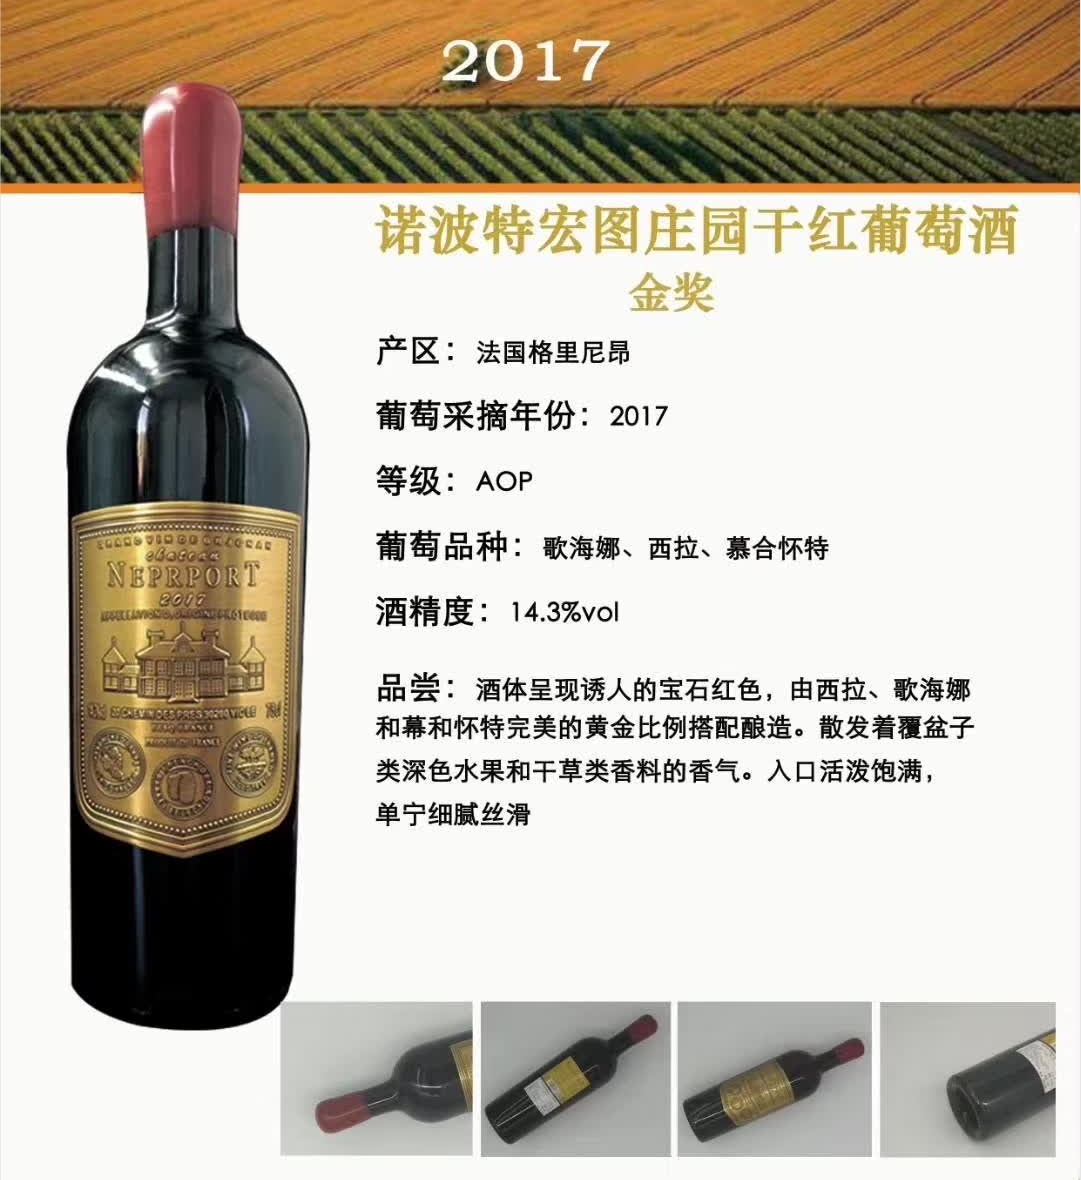 上海万耀诺波特宏图庄园干红葡萄酒现货供应法国原装进口AOP级别混酿红酒进口红酒葡萄酒代理加盟